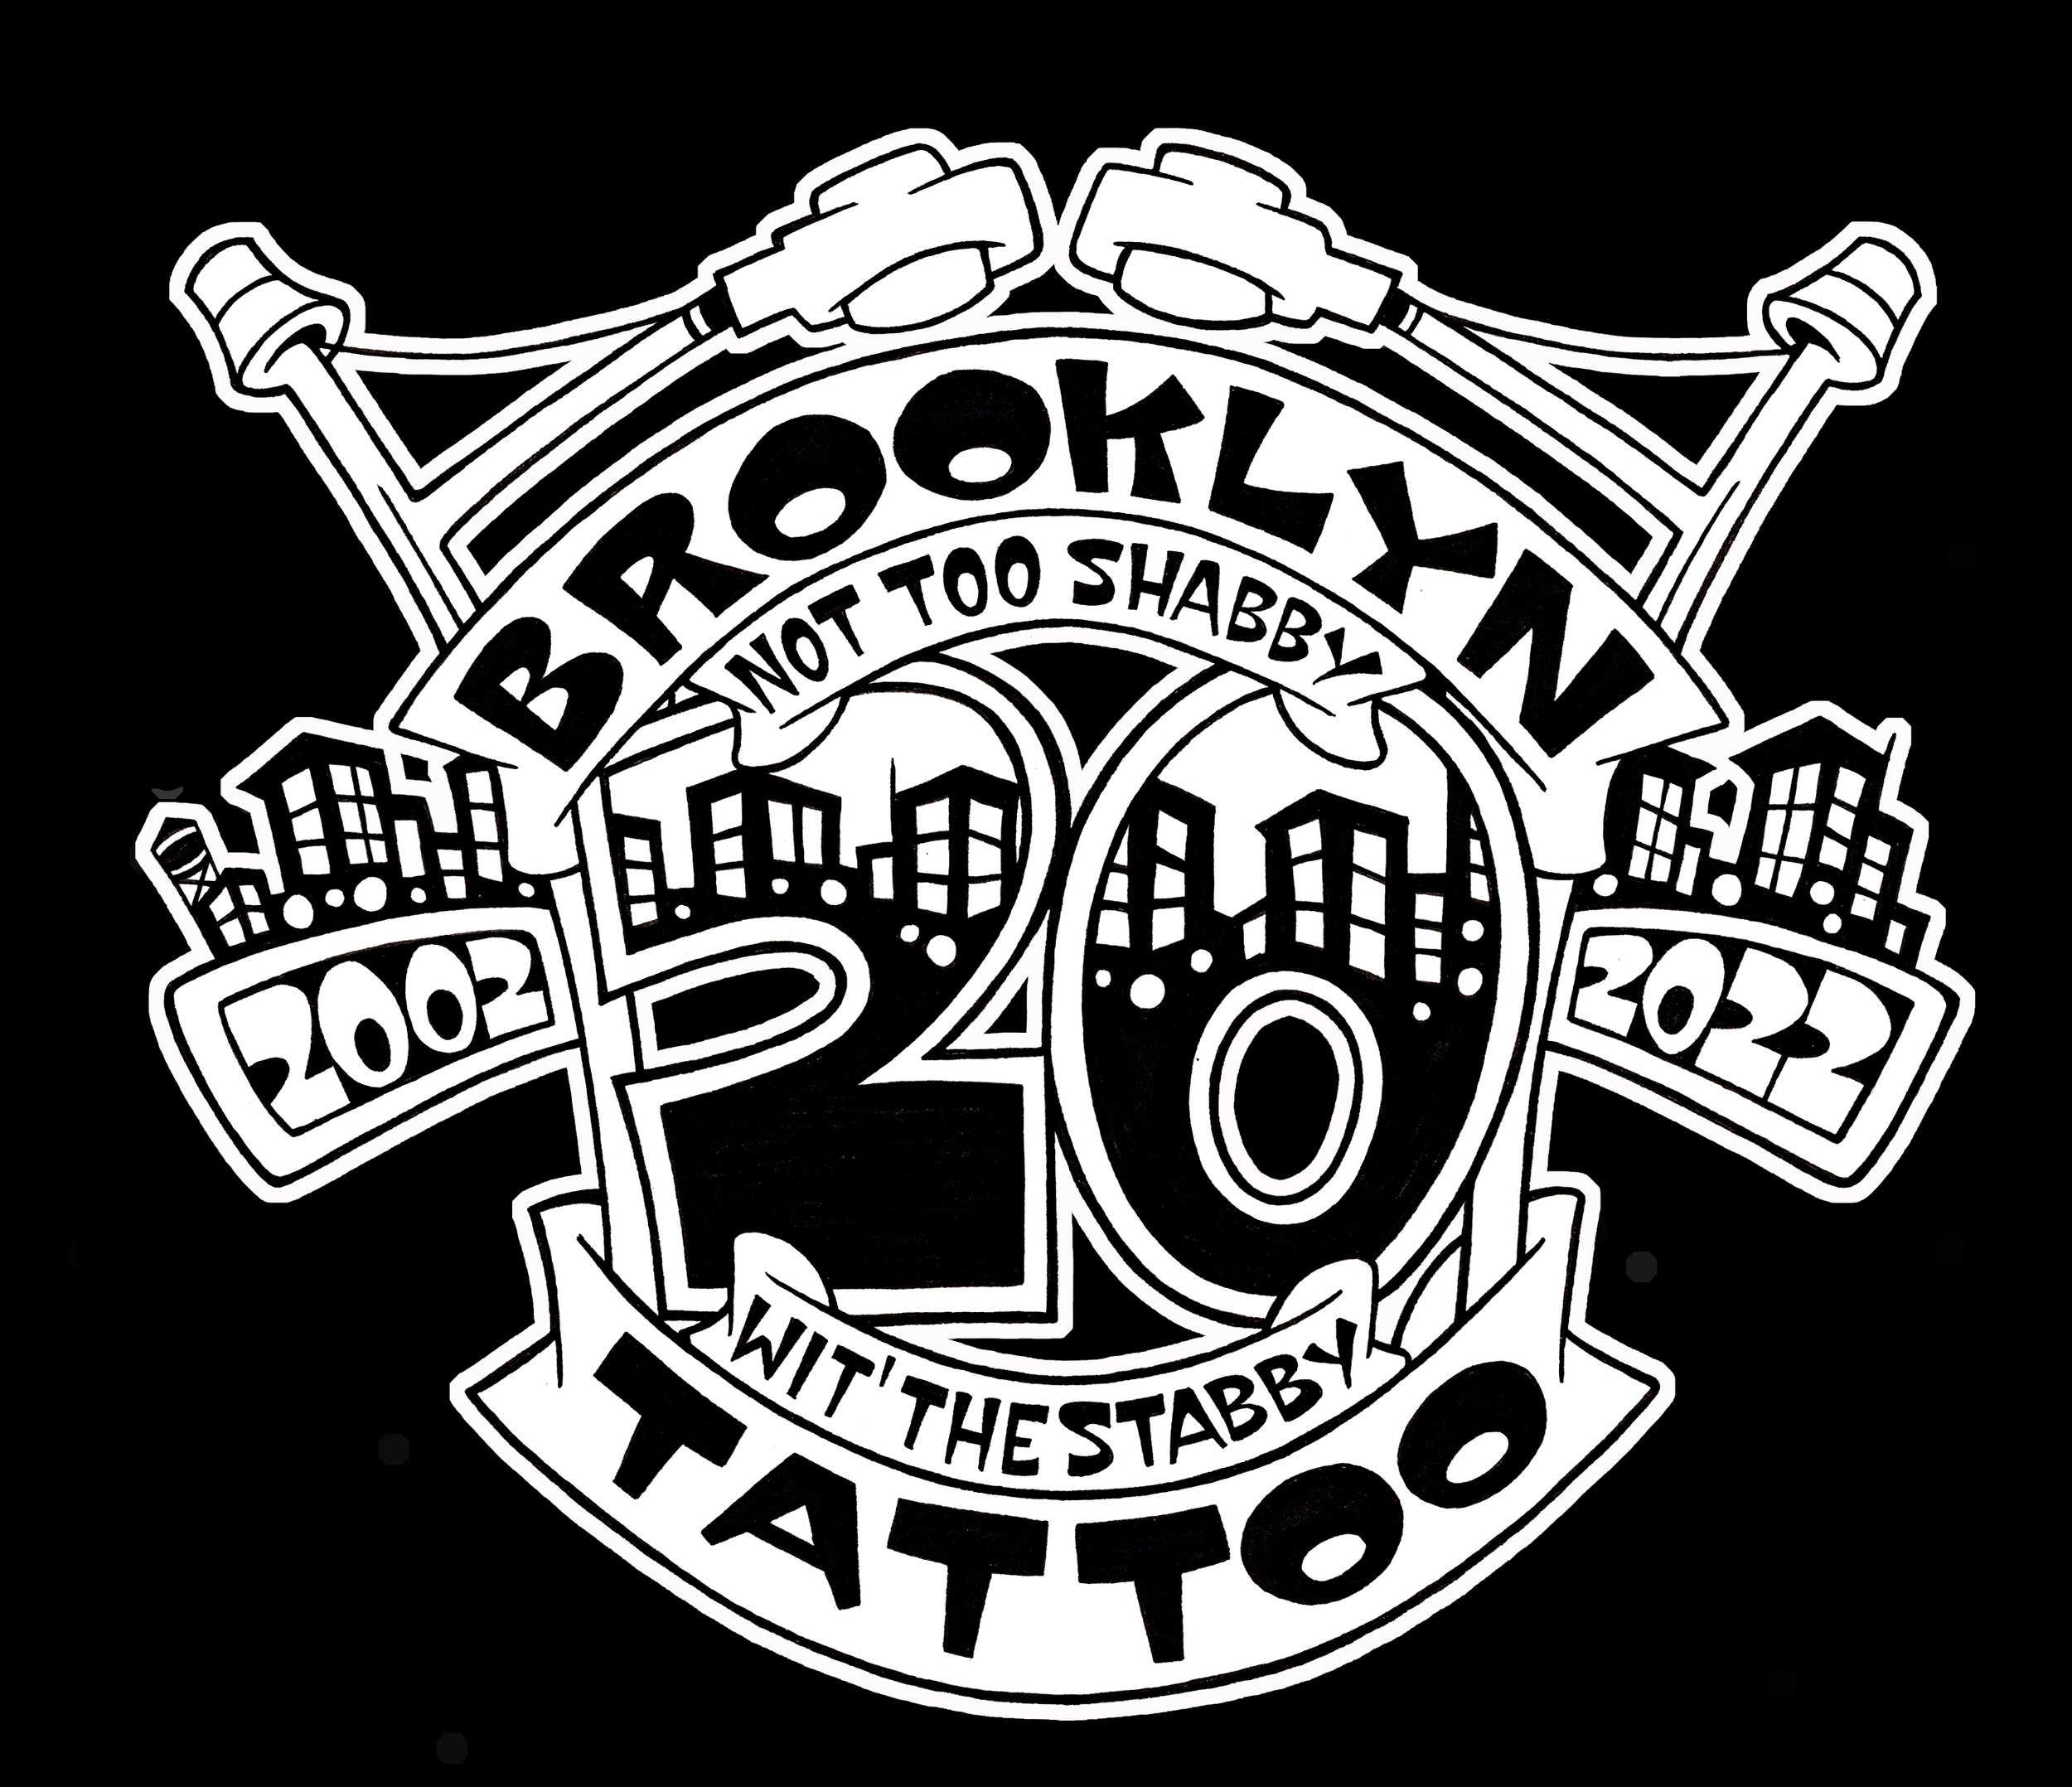 Share more than 70 brooklyn 99 tattoo ideas  thtantai2